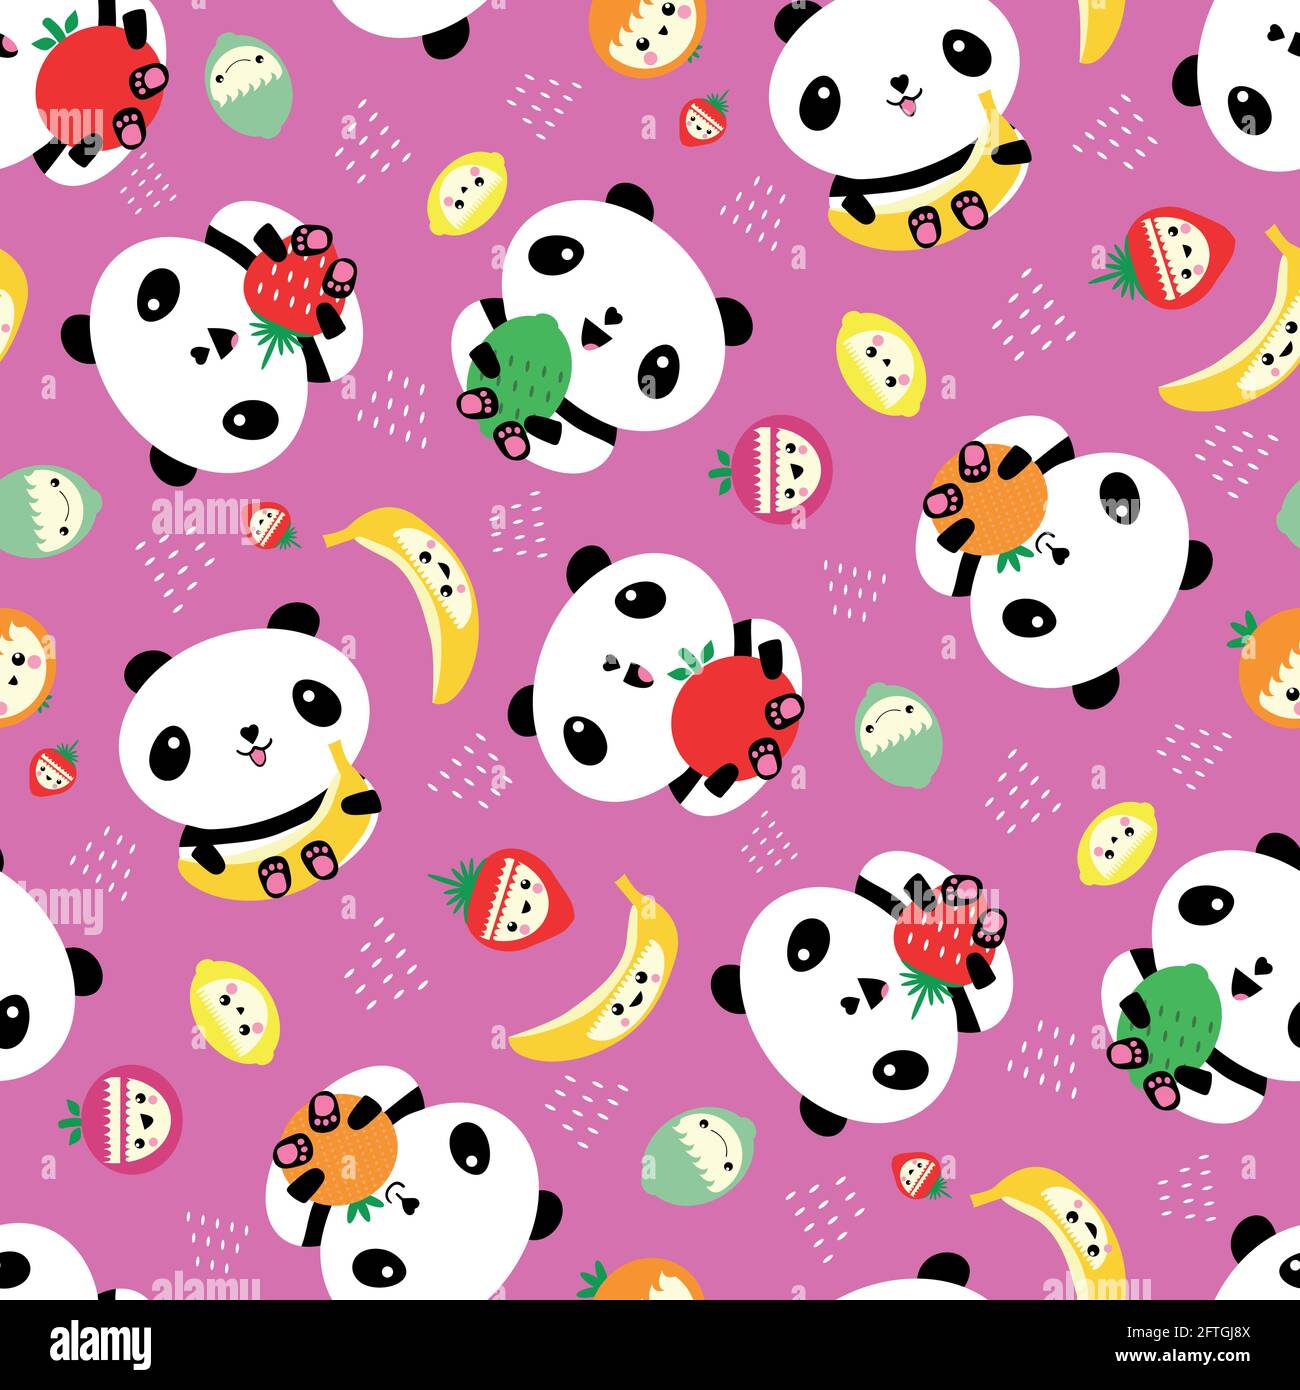 Kawaii Panda E Fundo Do Vetor De Frutos Sem Costura. Ursos De Desenho  Animado E Frutos De Caráter Rindo Espalhados a Rosa Ilustração do Vetor -  Ilustração de backdrop, urso: 215254027